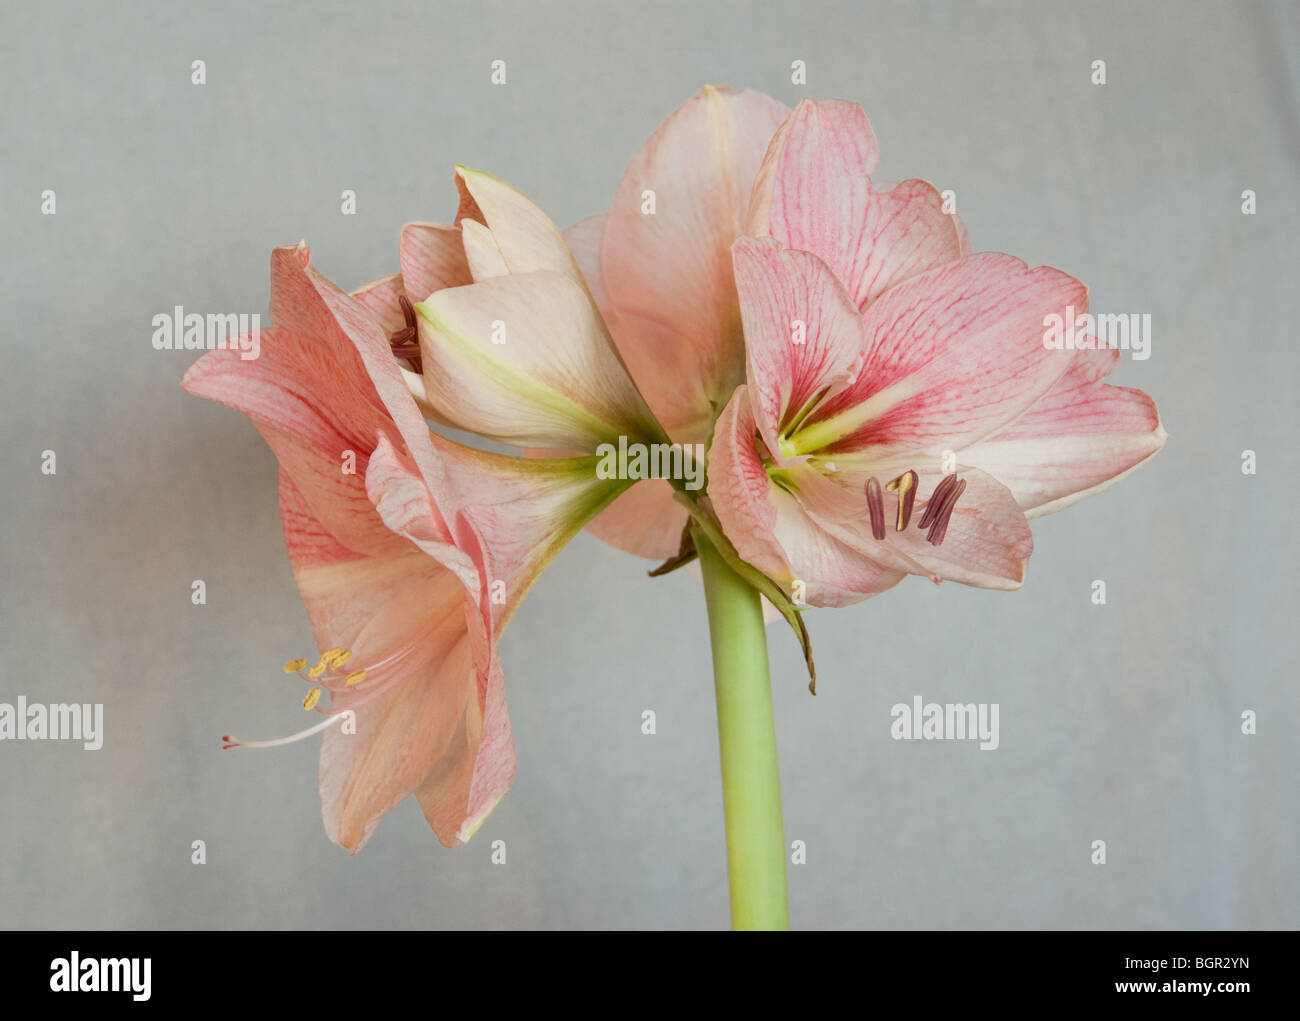 flowers of pink amaryllis Stock Photo